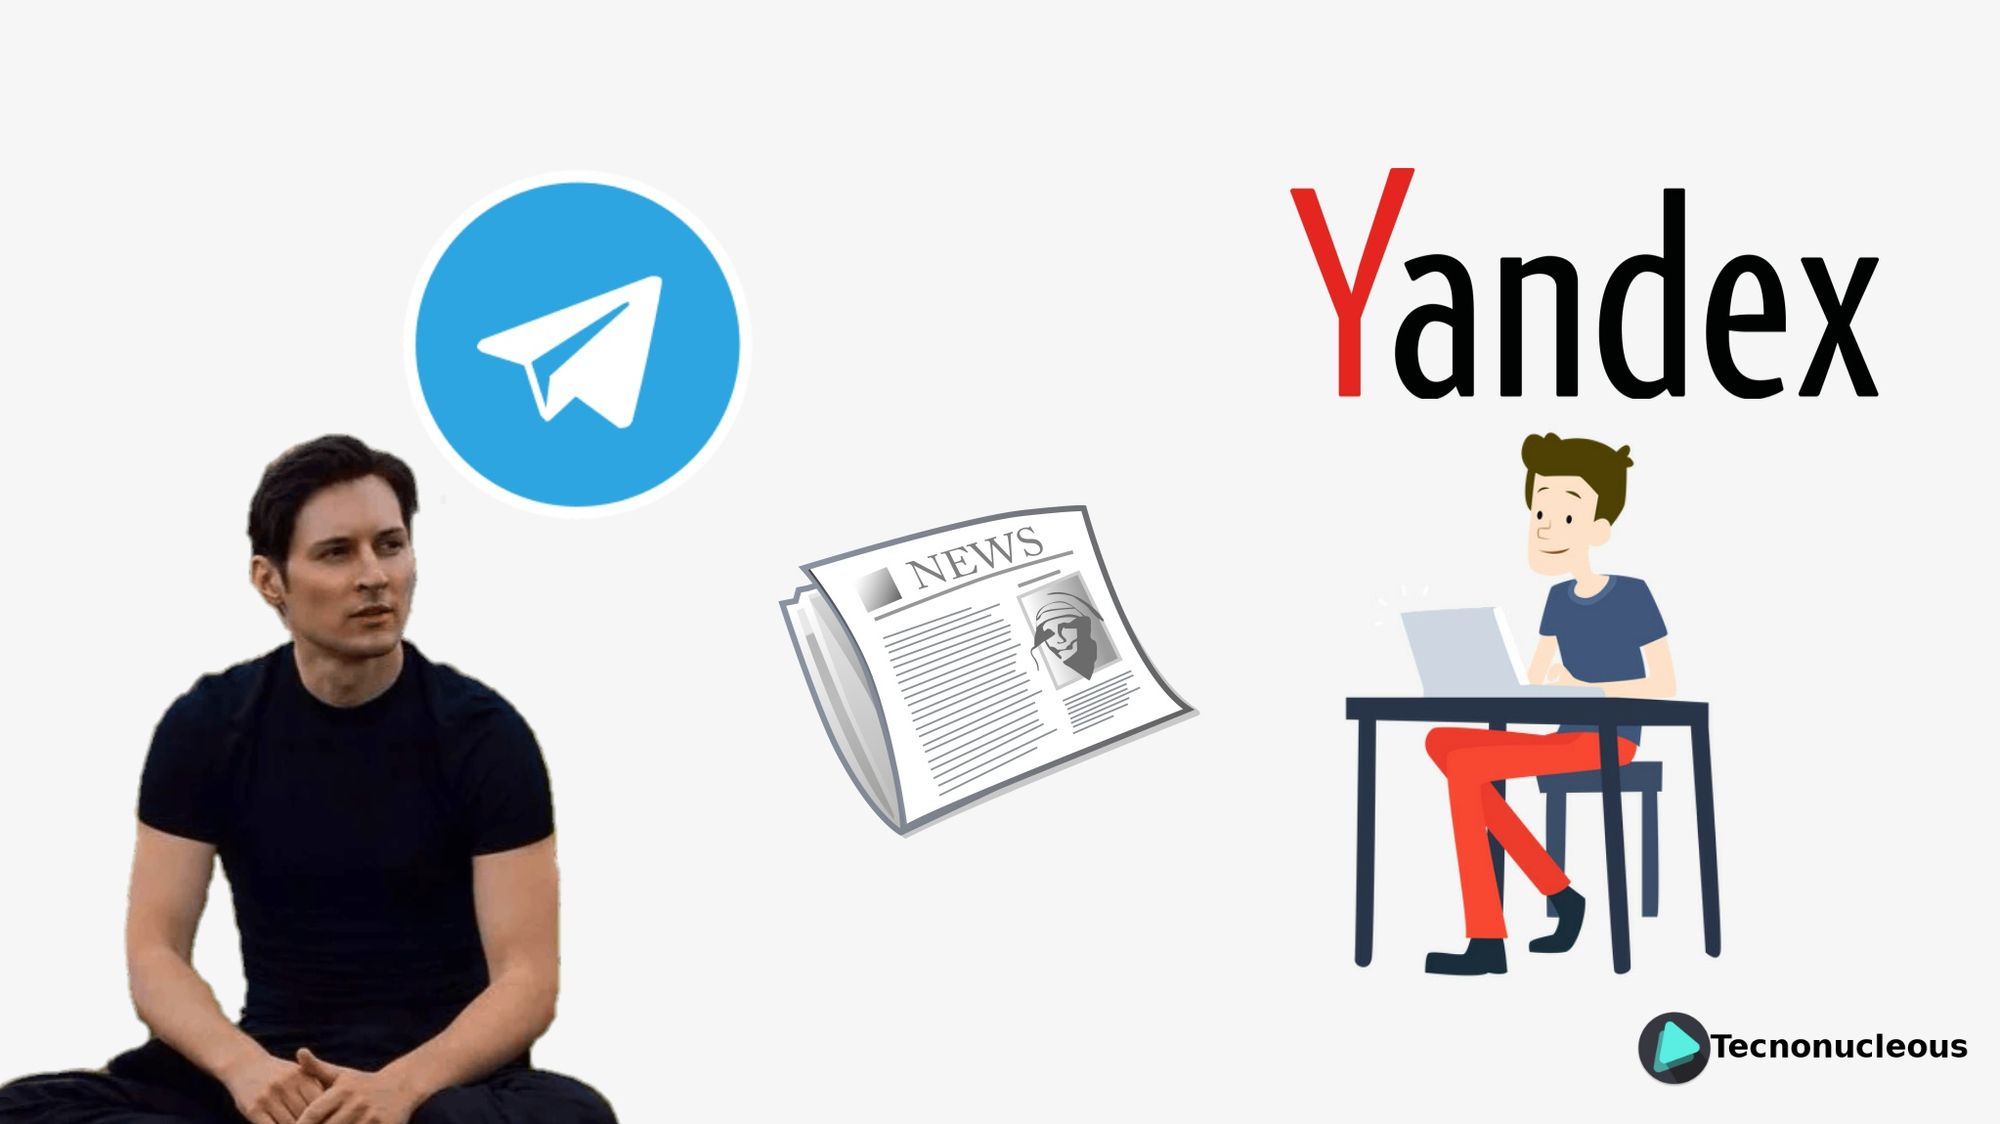 Pavel Durov quiere atraer a los desarrolladores de Yandex para Telegram